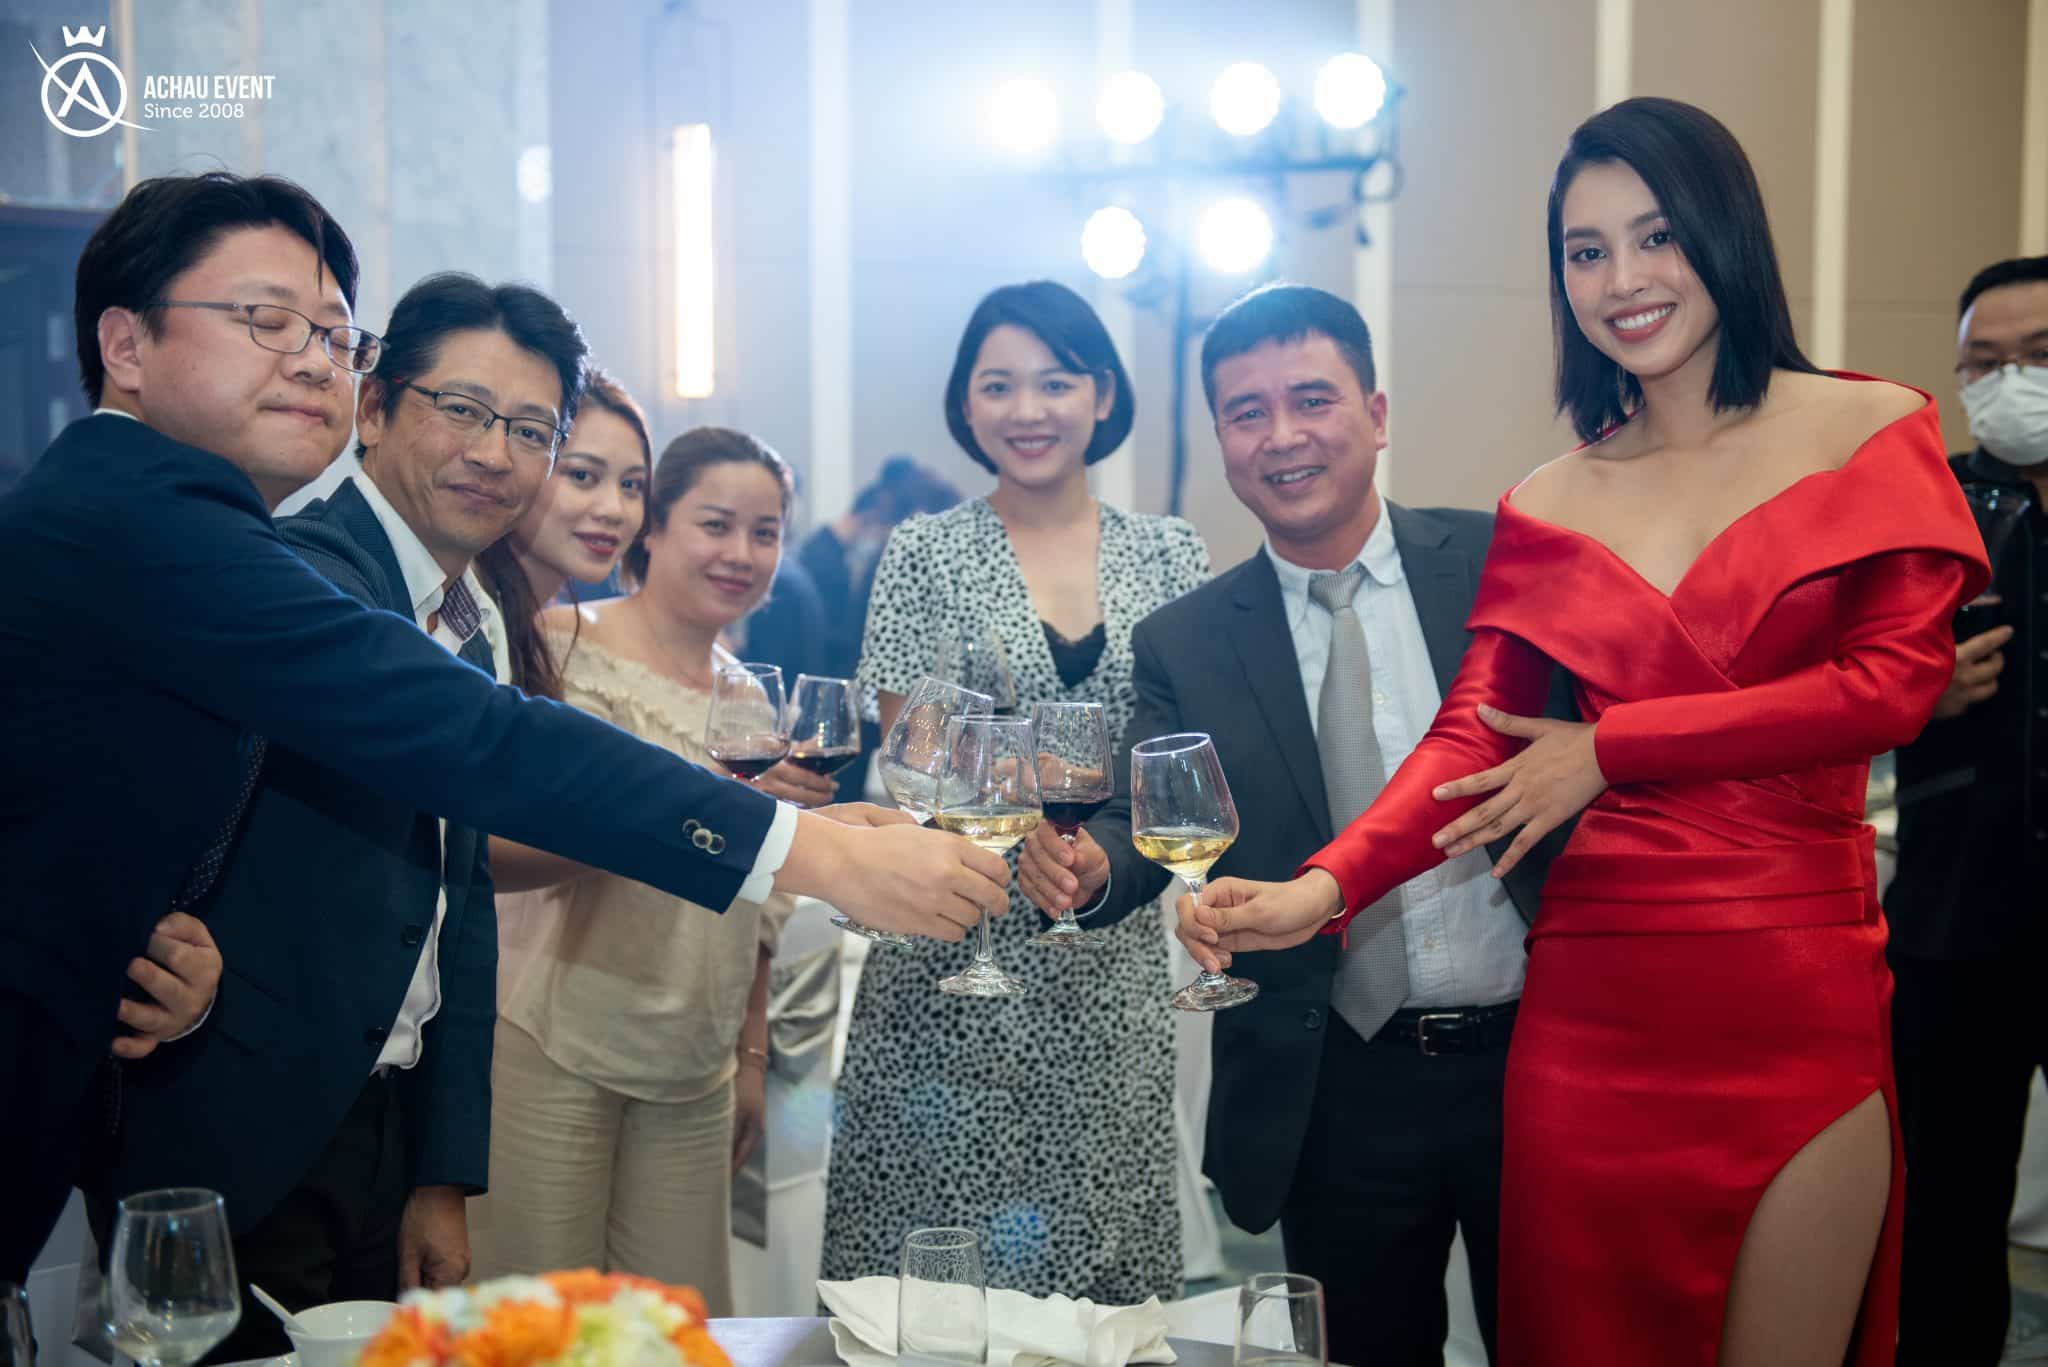 Hoa hậu Tiểu Vy dự tiệc cùng khách mời